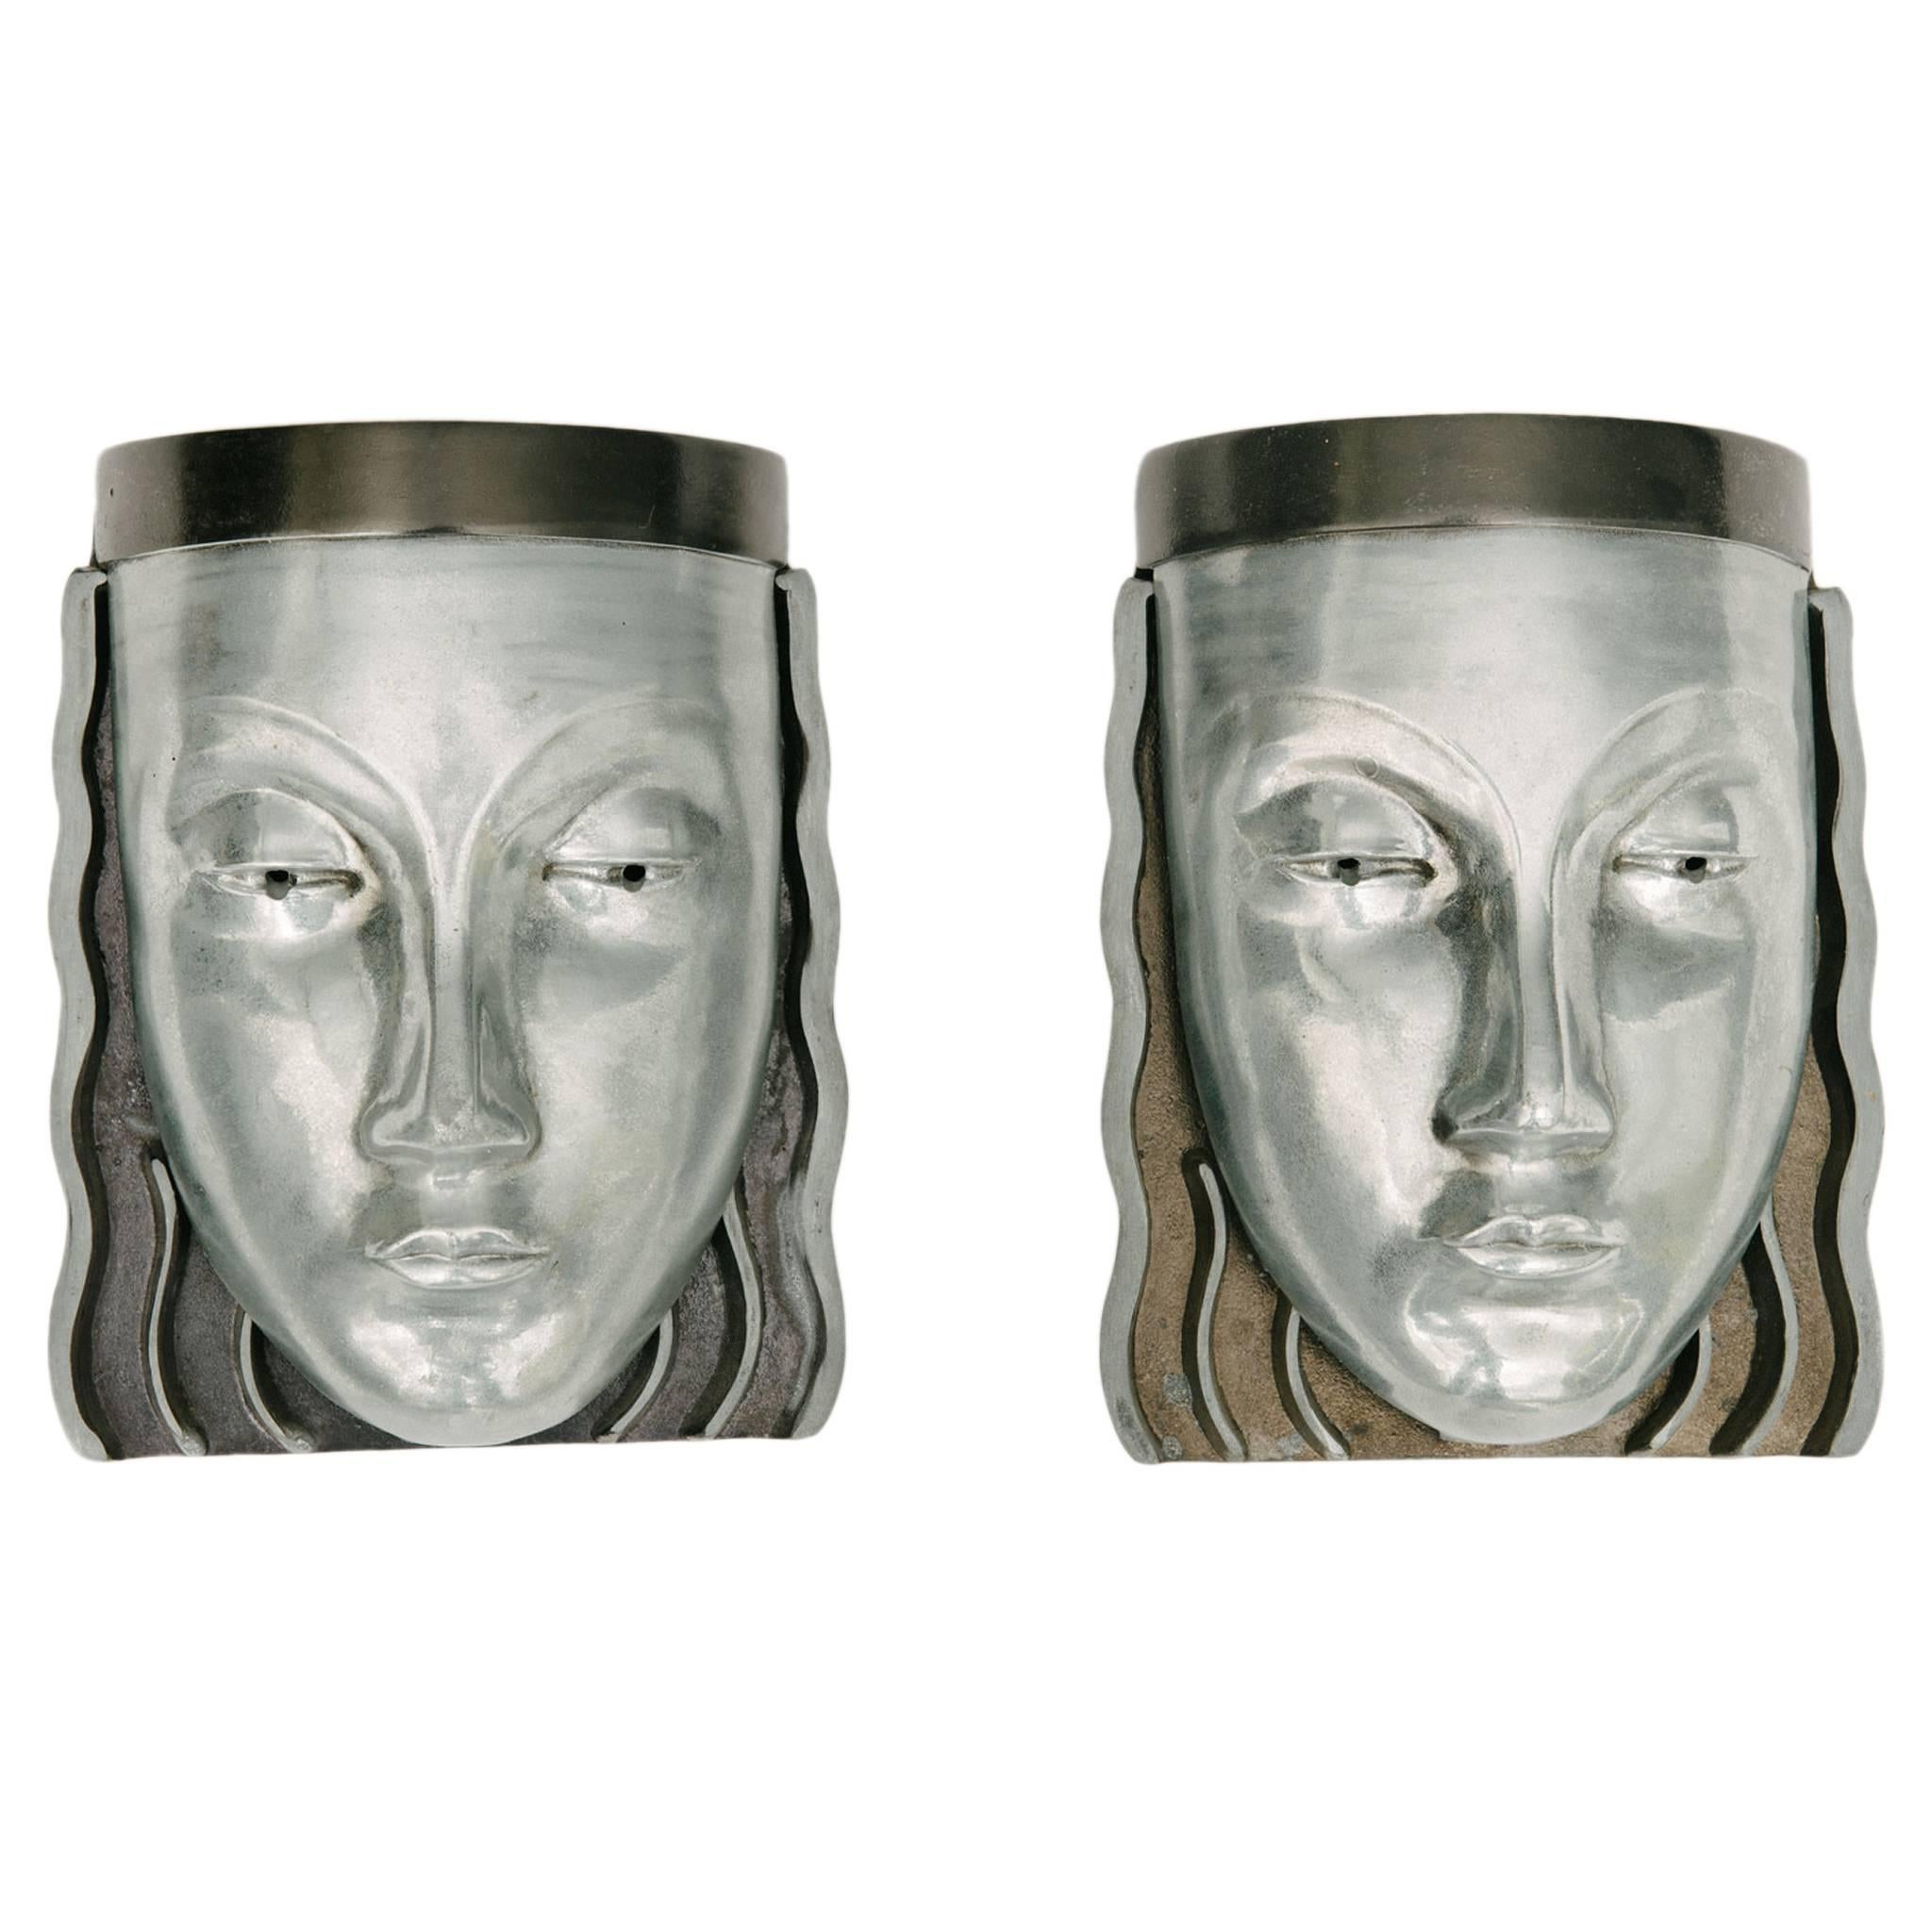 Pair of Art Deco Style Aluminum Face Sconces